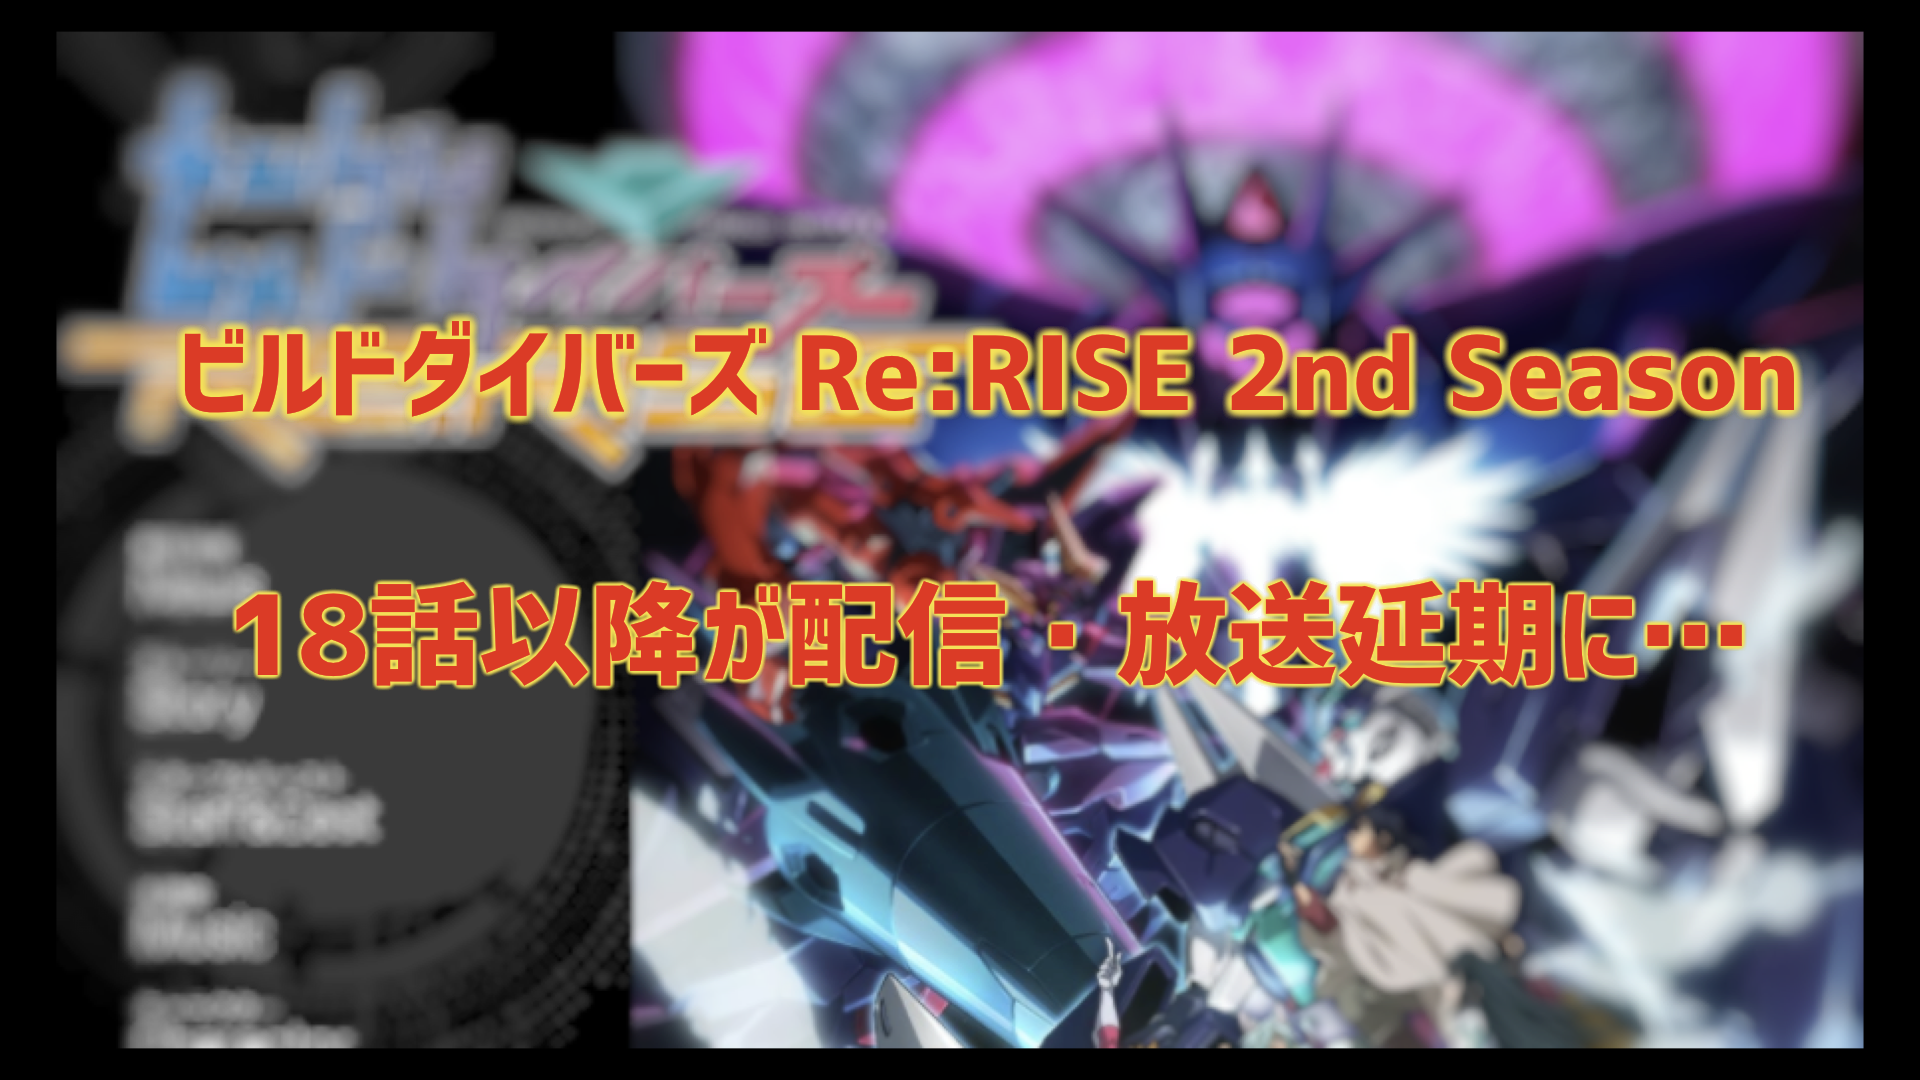 『ガンダムビルドダイバーズRe:RISE』5/14日からの配信・放送が延期。